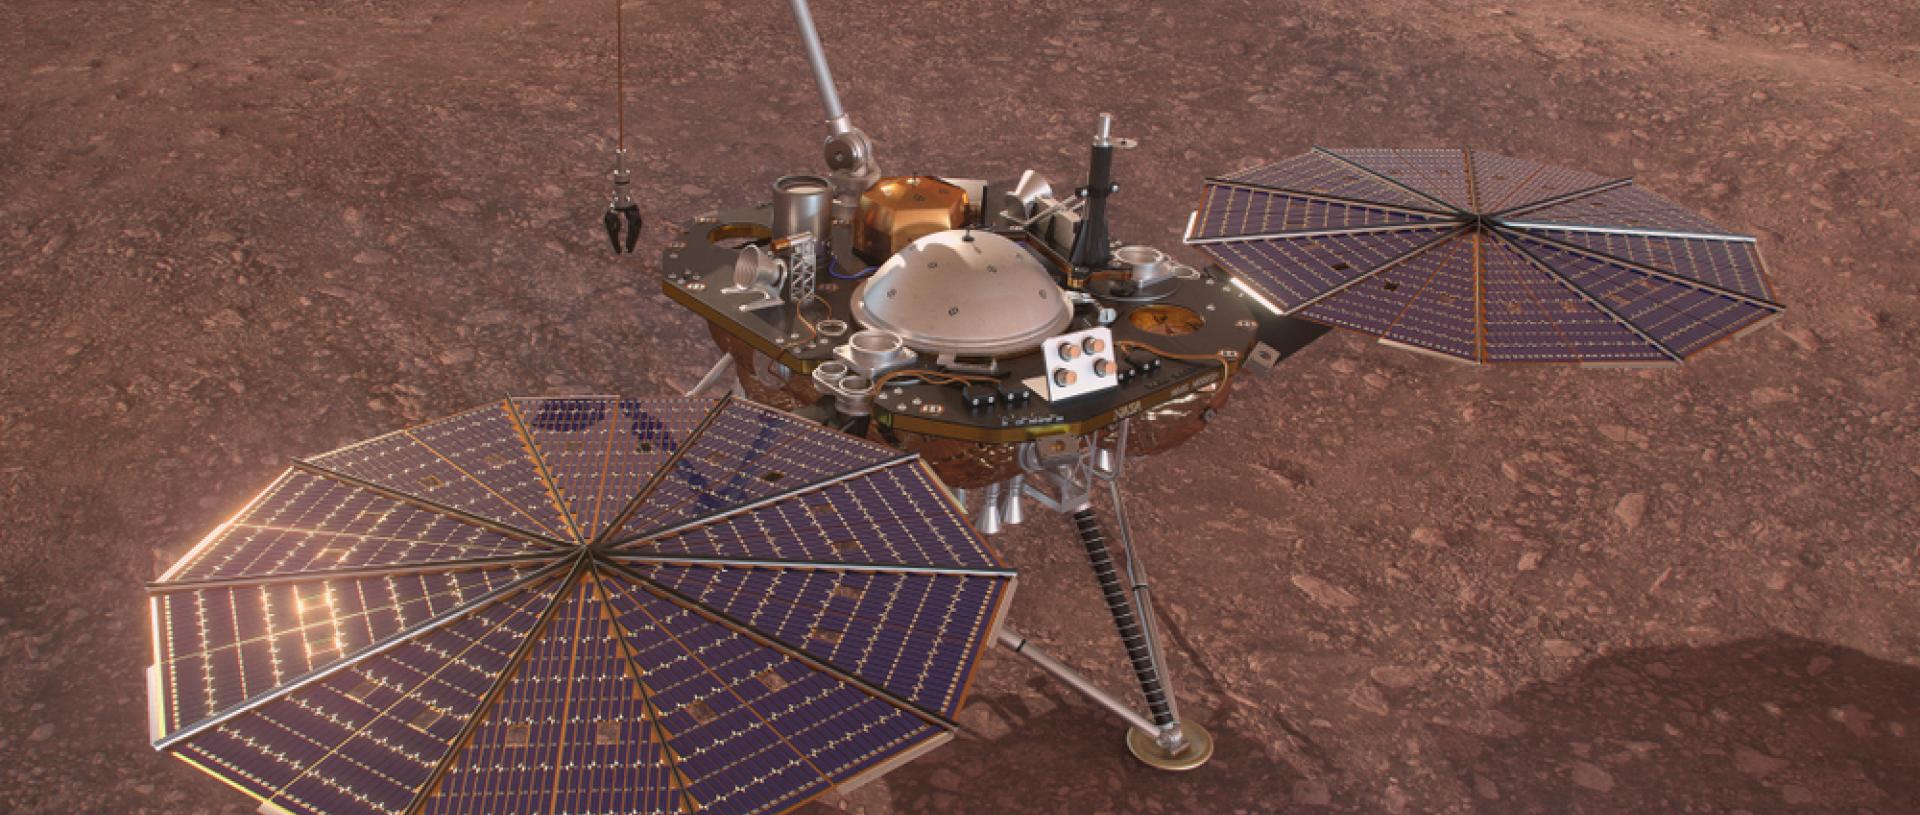 NASA - InSight: Μετρήθηκε για πρώτη φορά ο πυρήνας του Άρη, βρέθηκε απρόσμενα μεγάλος